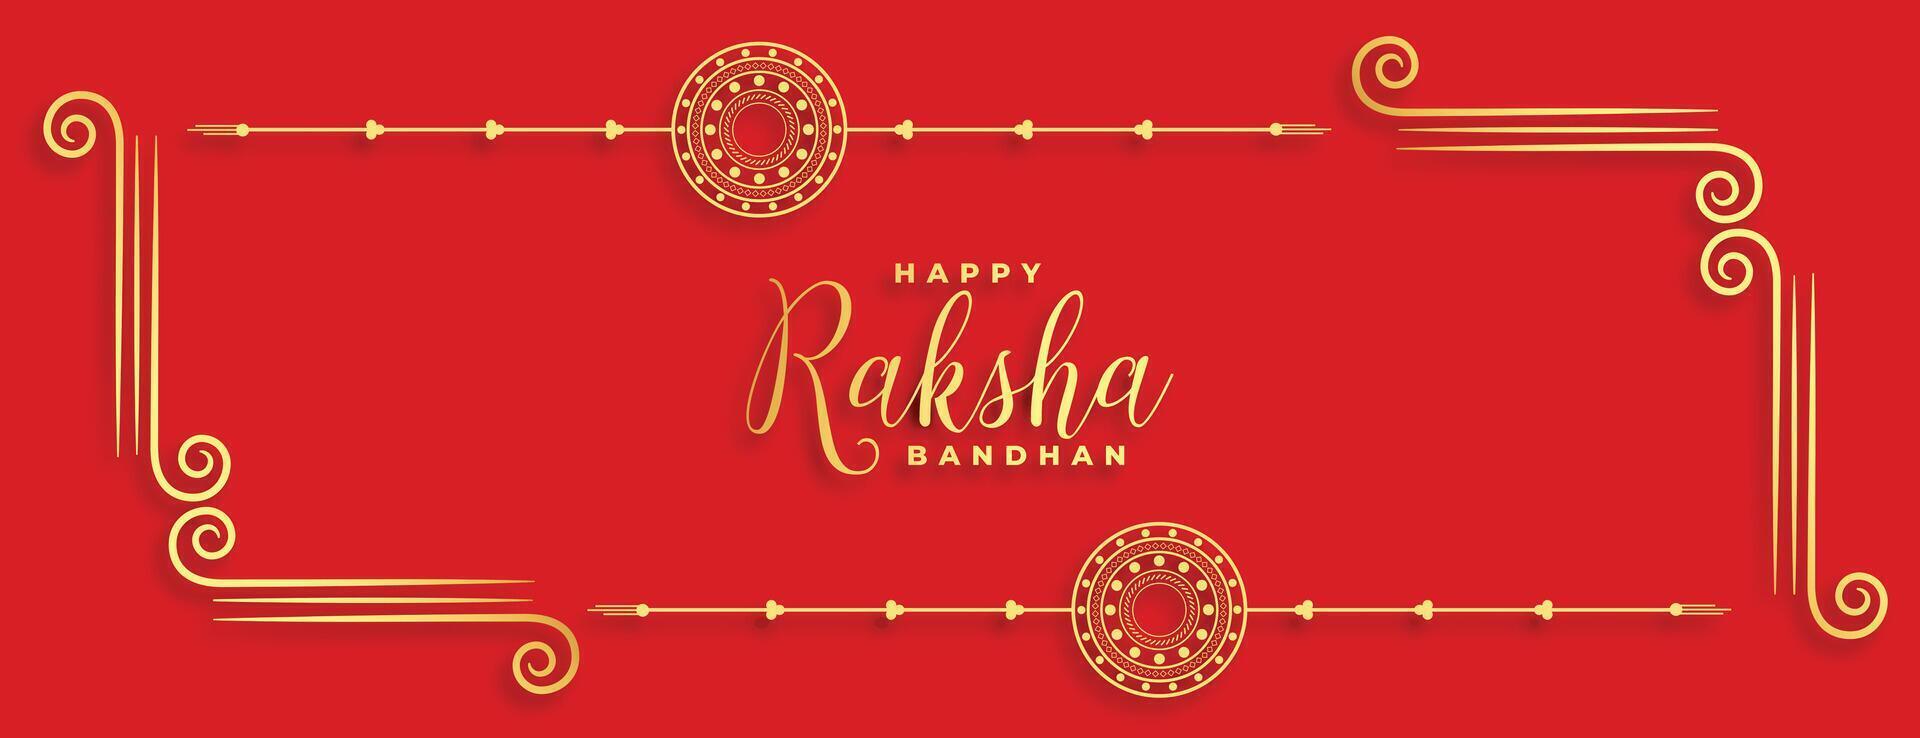 traditioneel Indisch raksha bandhan festival rood banier ontwerp vector